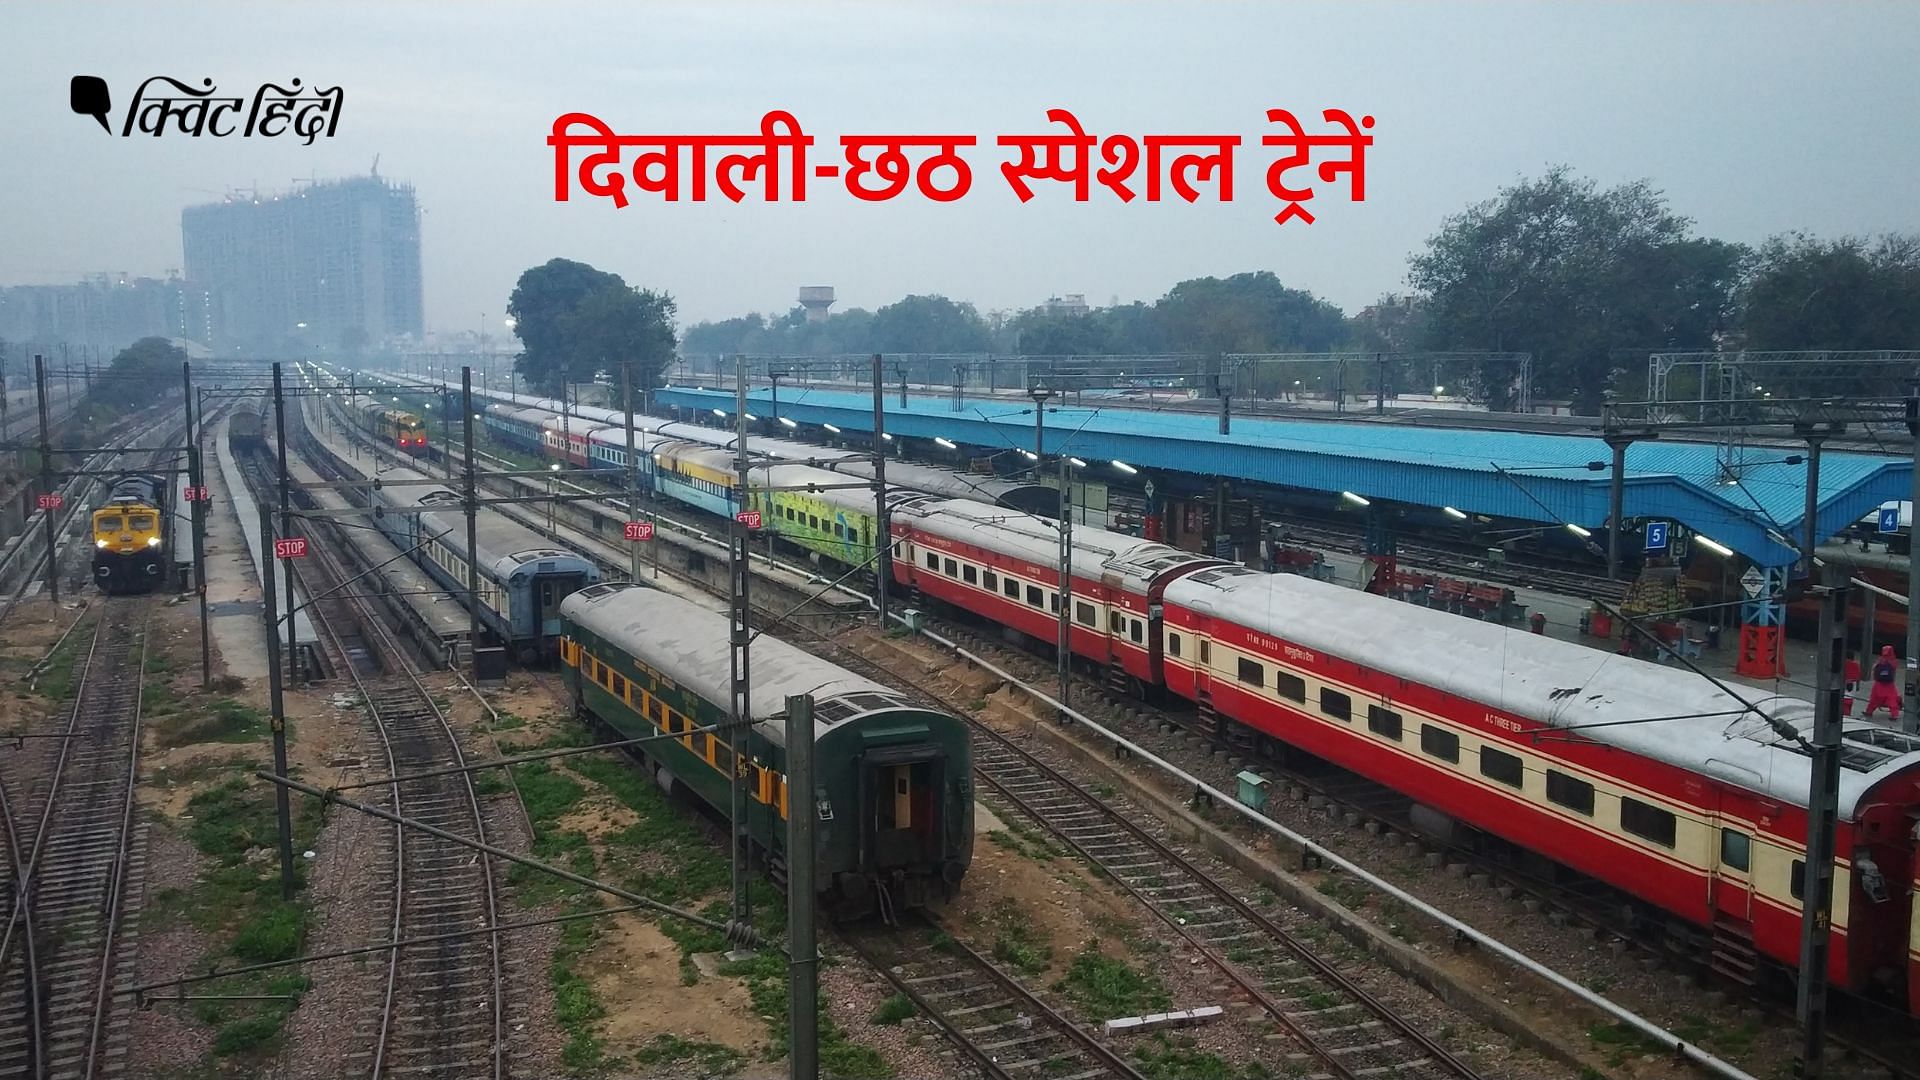 <div class="paragraphs"><p>Indian Railways: दिवाली-छठ के लिए ओडिशा और भुवनेश्वर ट्रैक पर चलेंगी 5 स्पेशल ट्रेनें</p></div>